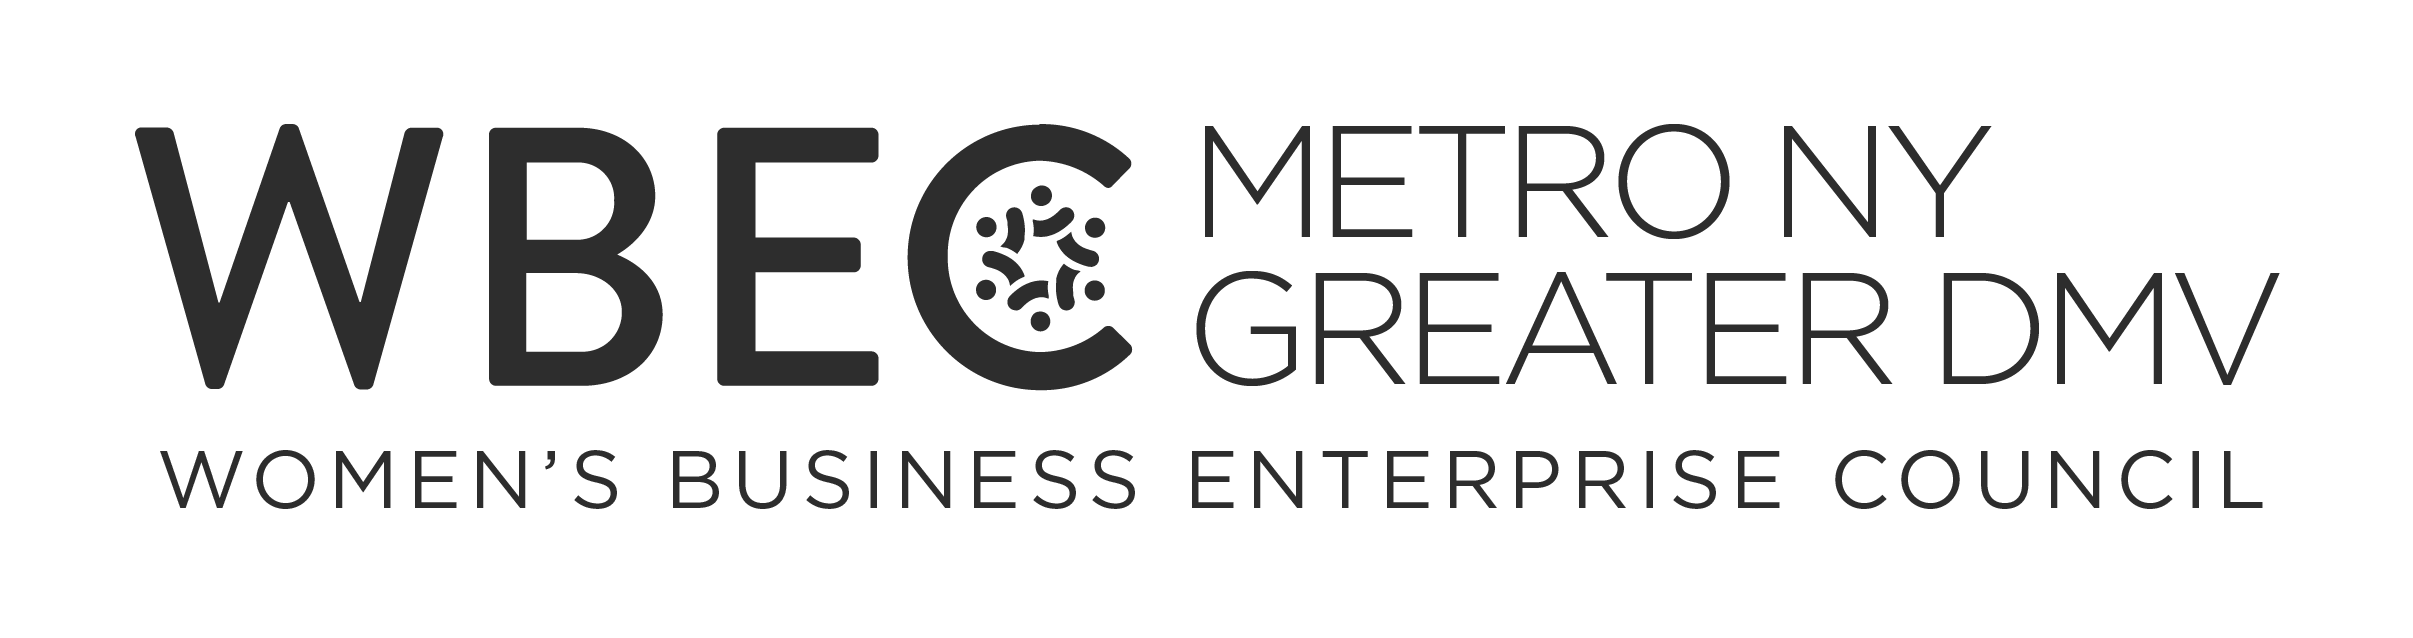 WBEC Metro NY and Greater DMV logo